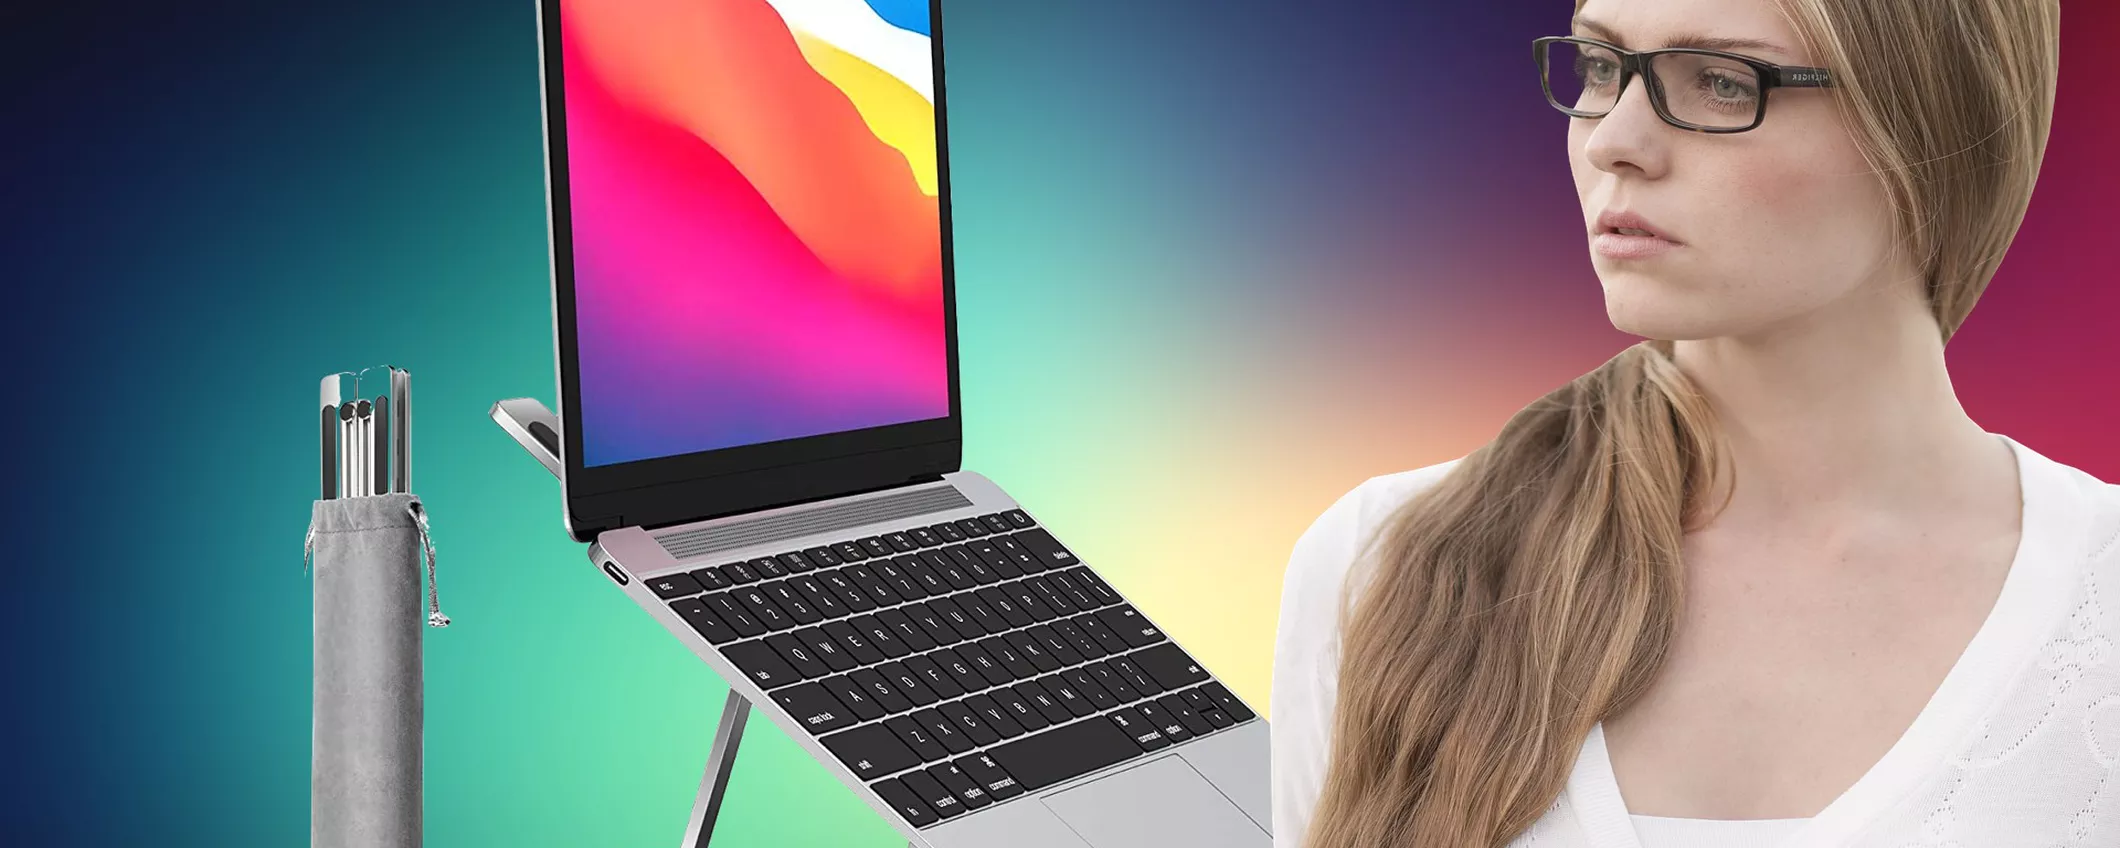 Supporto MacBook: perfetta areazione e ergonomia